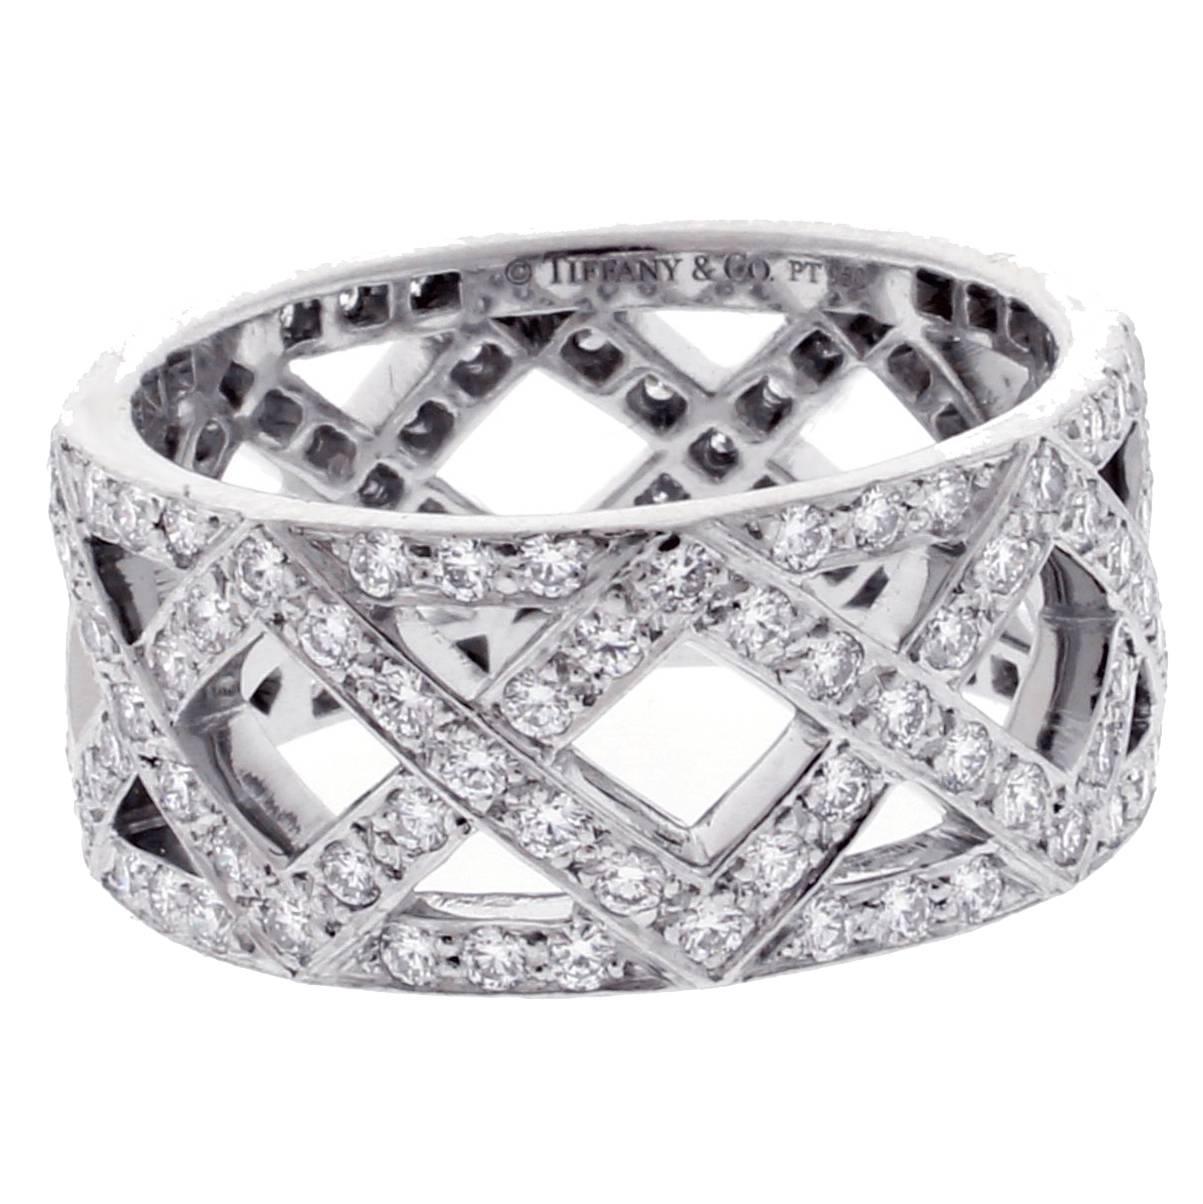  Tiffany & Co. Diamond Platinum Braid Band Ring